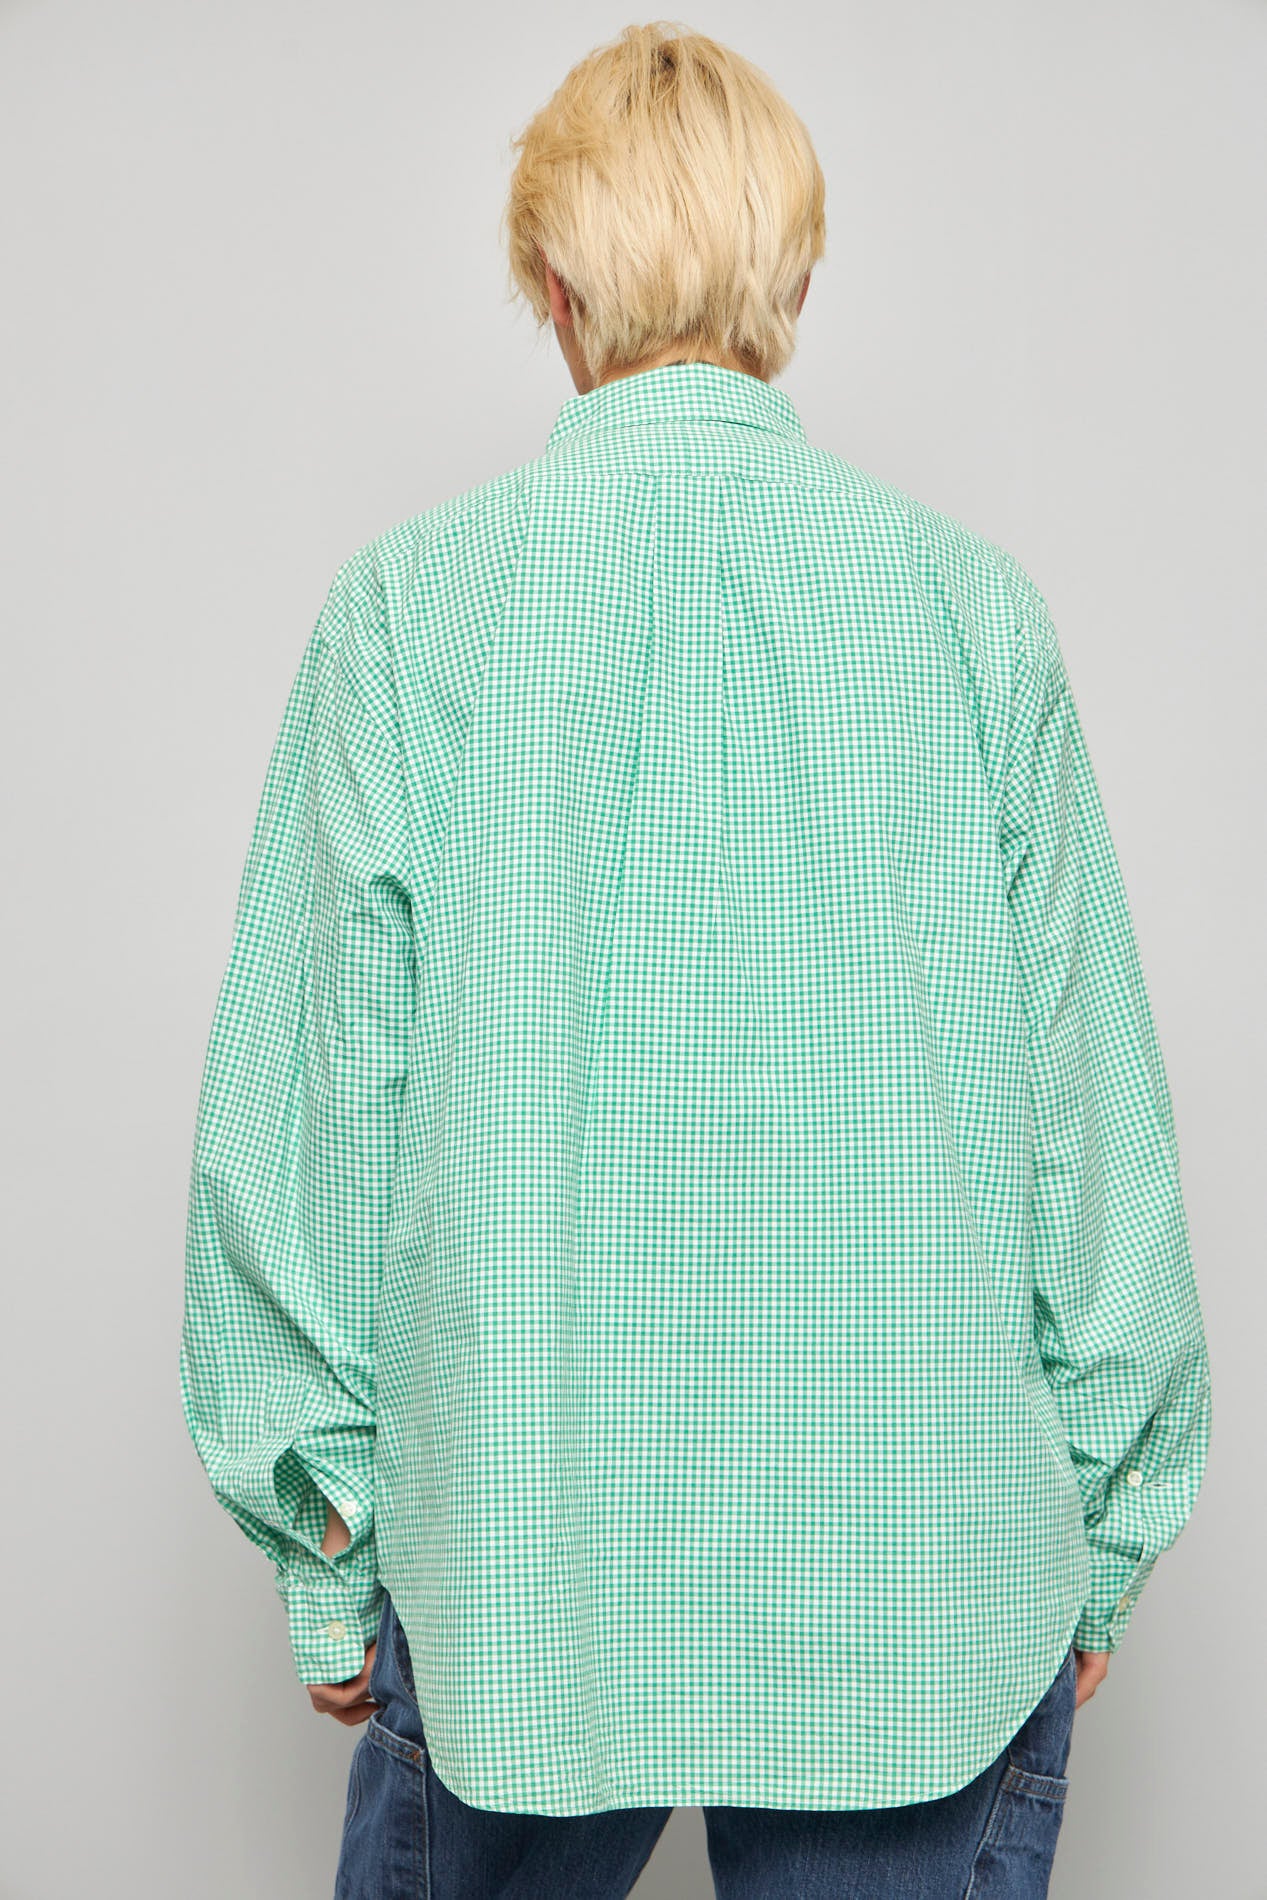 Blusa casual  verde ralph lauren talla Xl 419